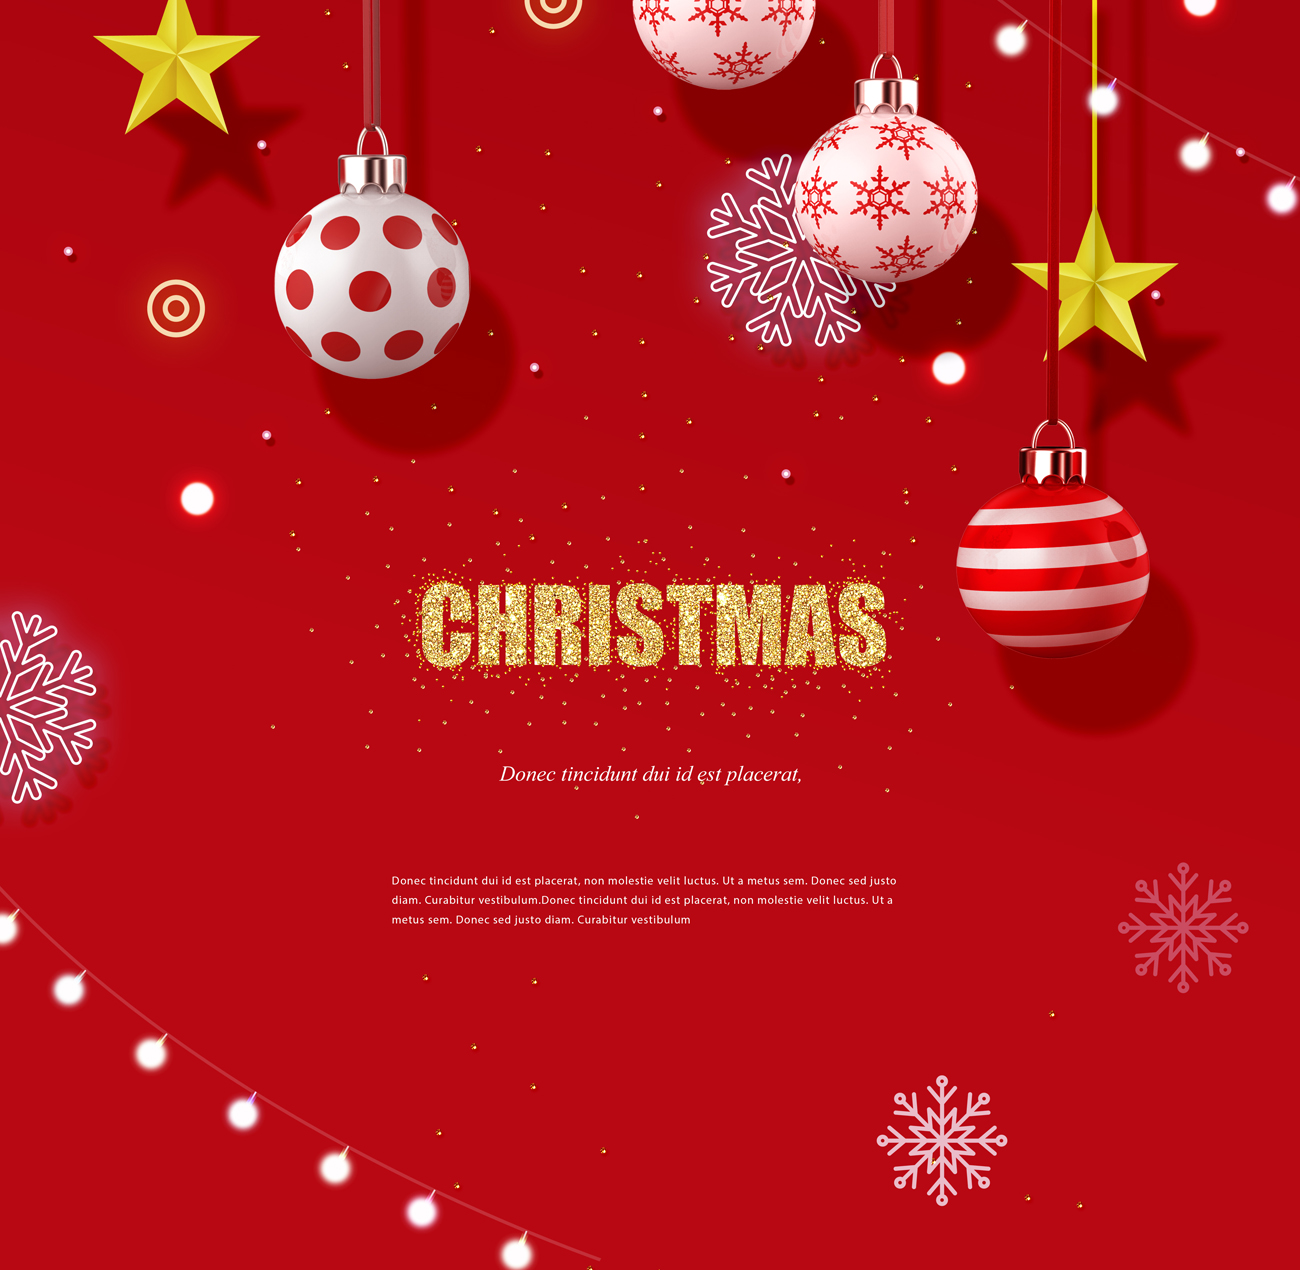 一组非常另类个性的圣诞节海报PSD模版素材 Winter i